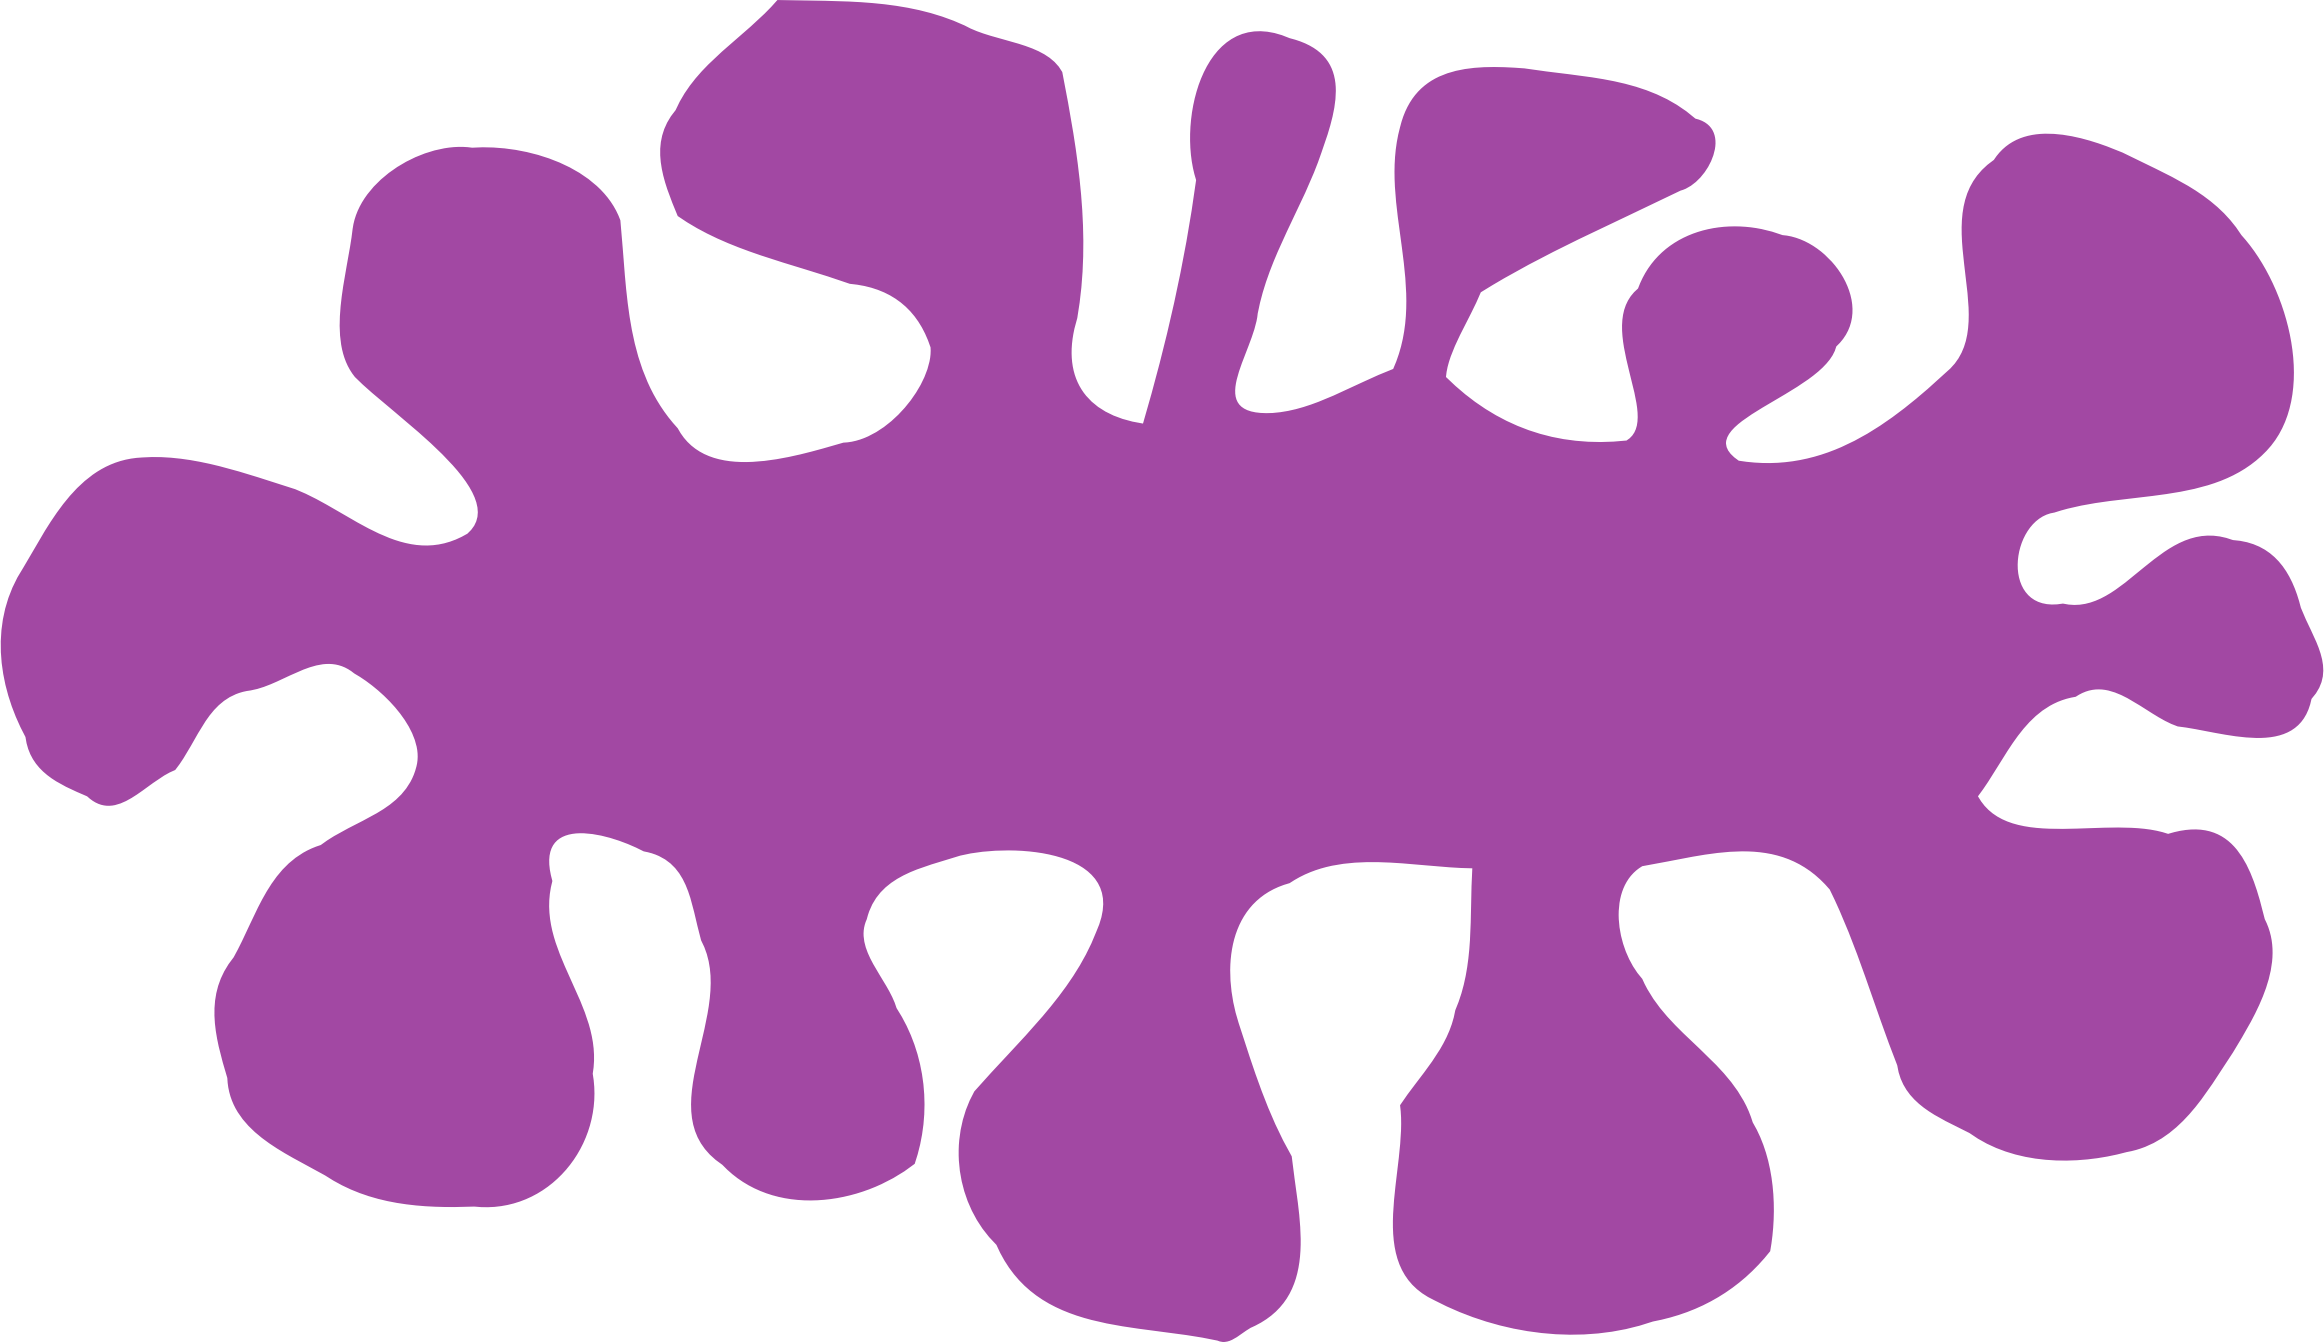 slime clipart purple paint